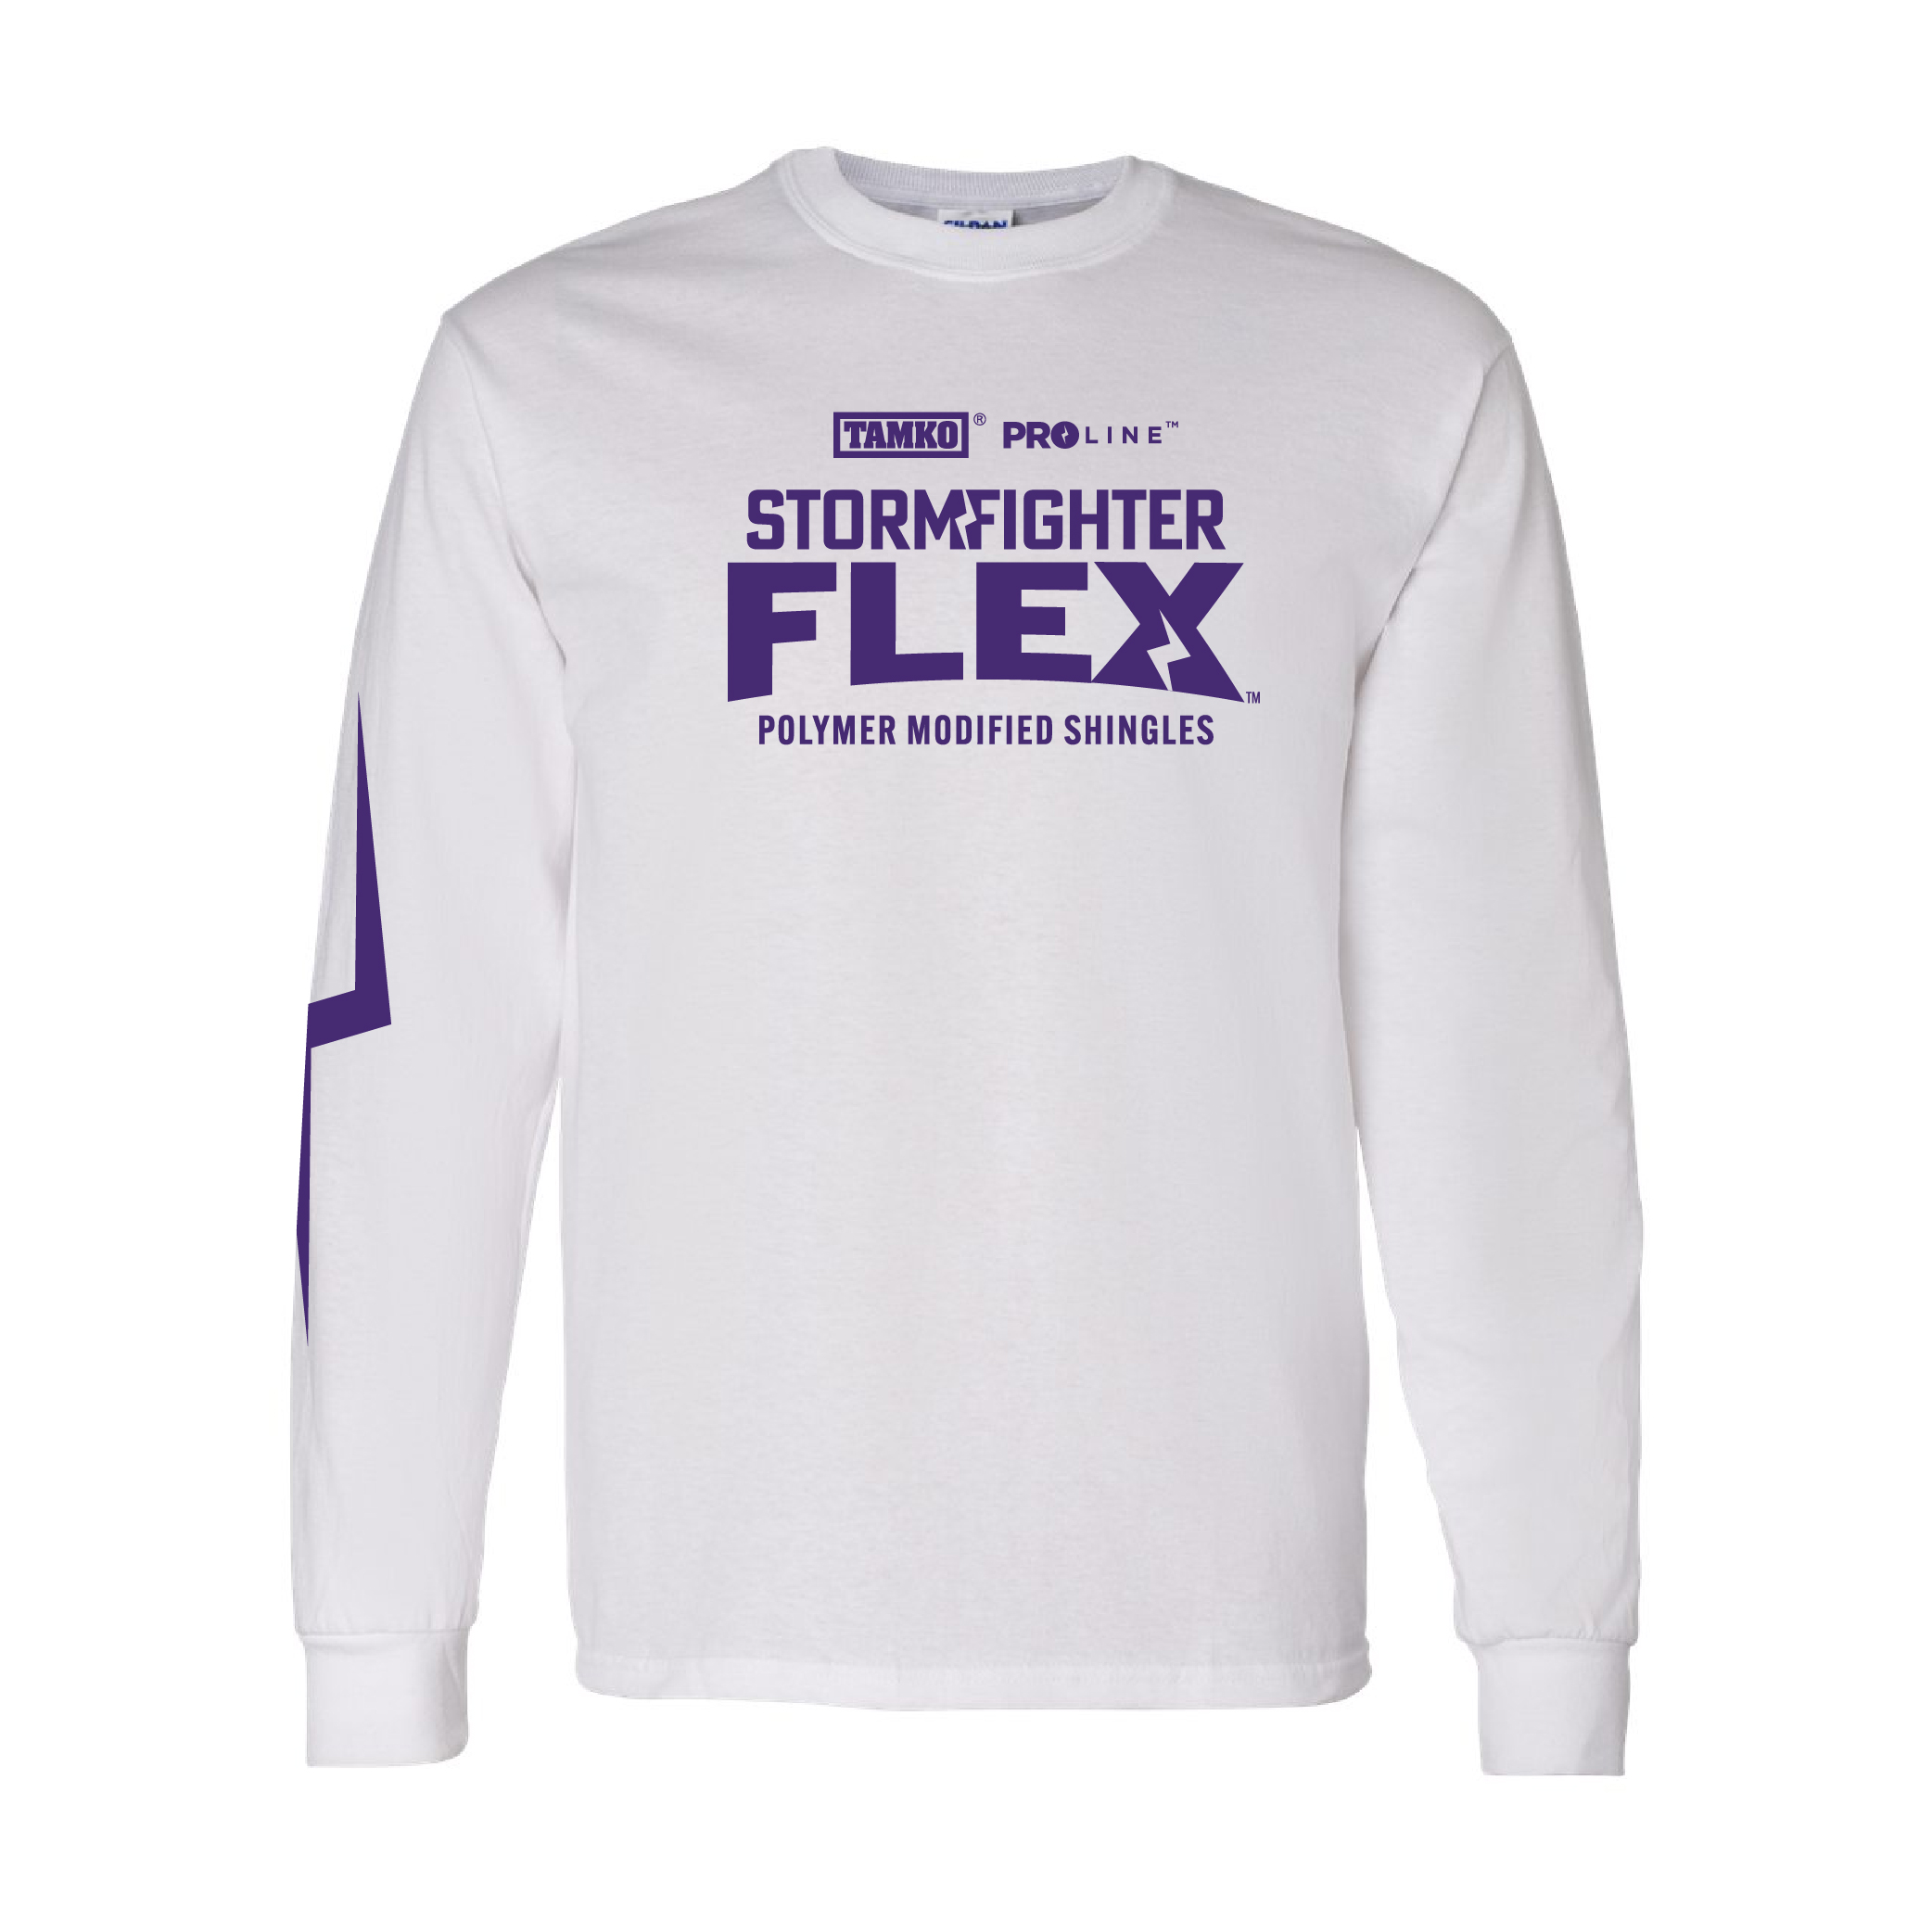 Stormfighter Flex Long Sleeve T-Shirt